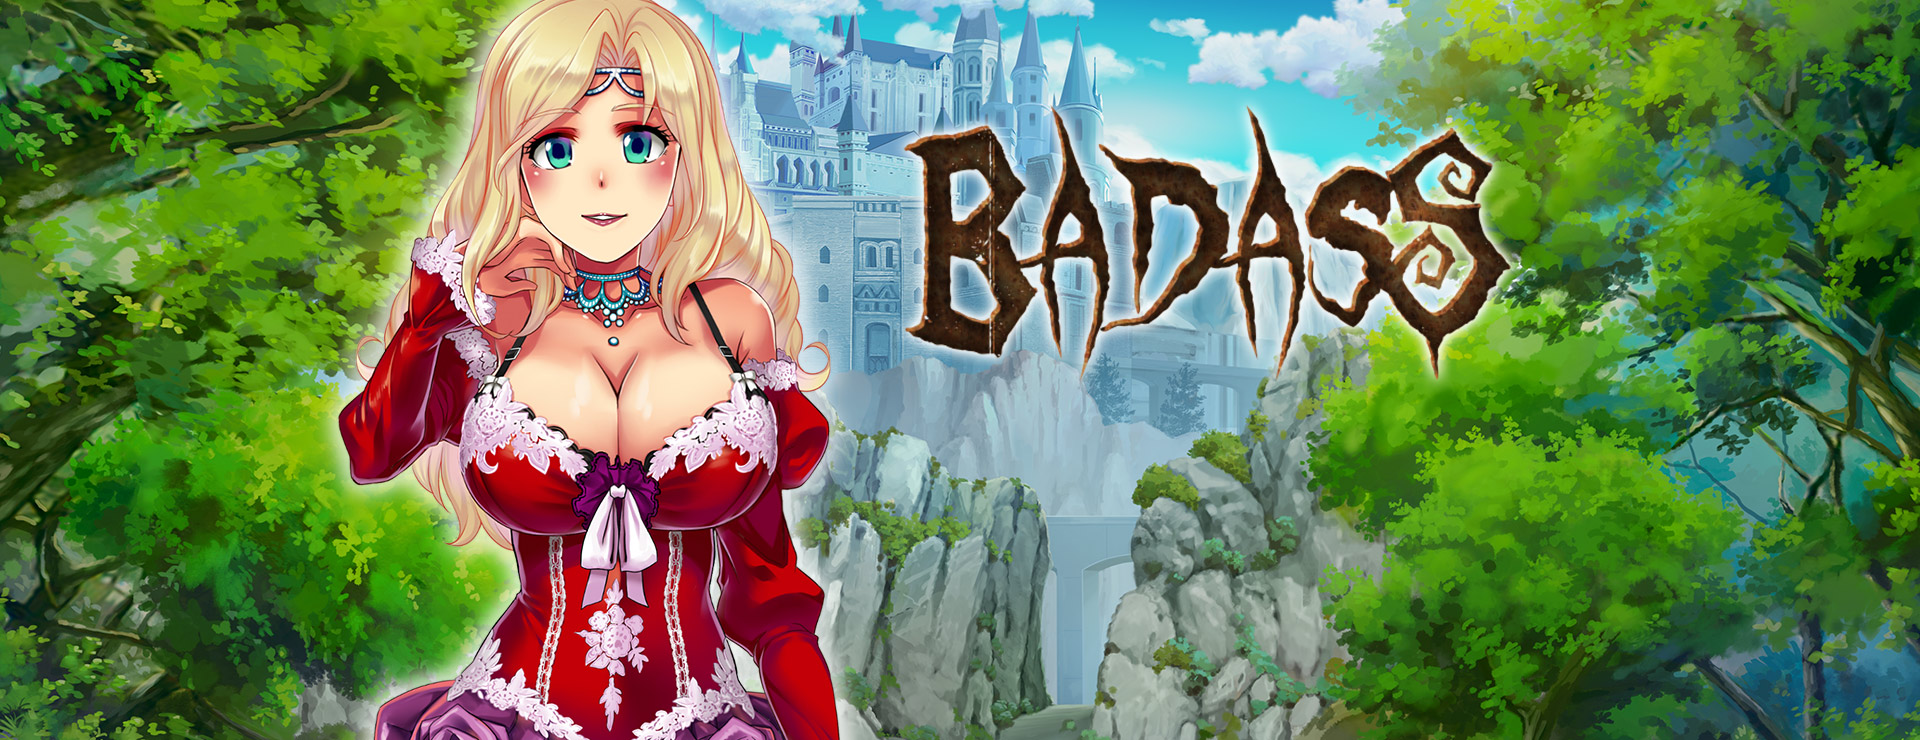 BADASS - RPG Spiel